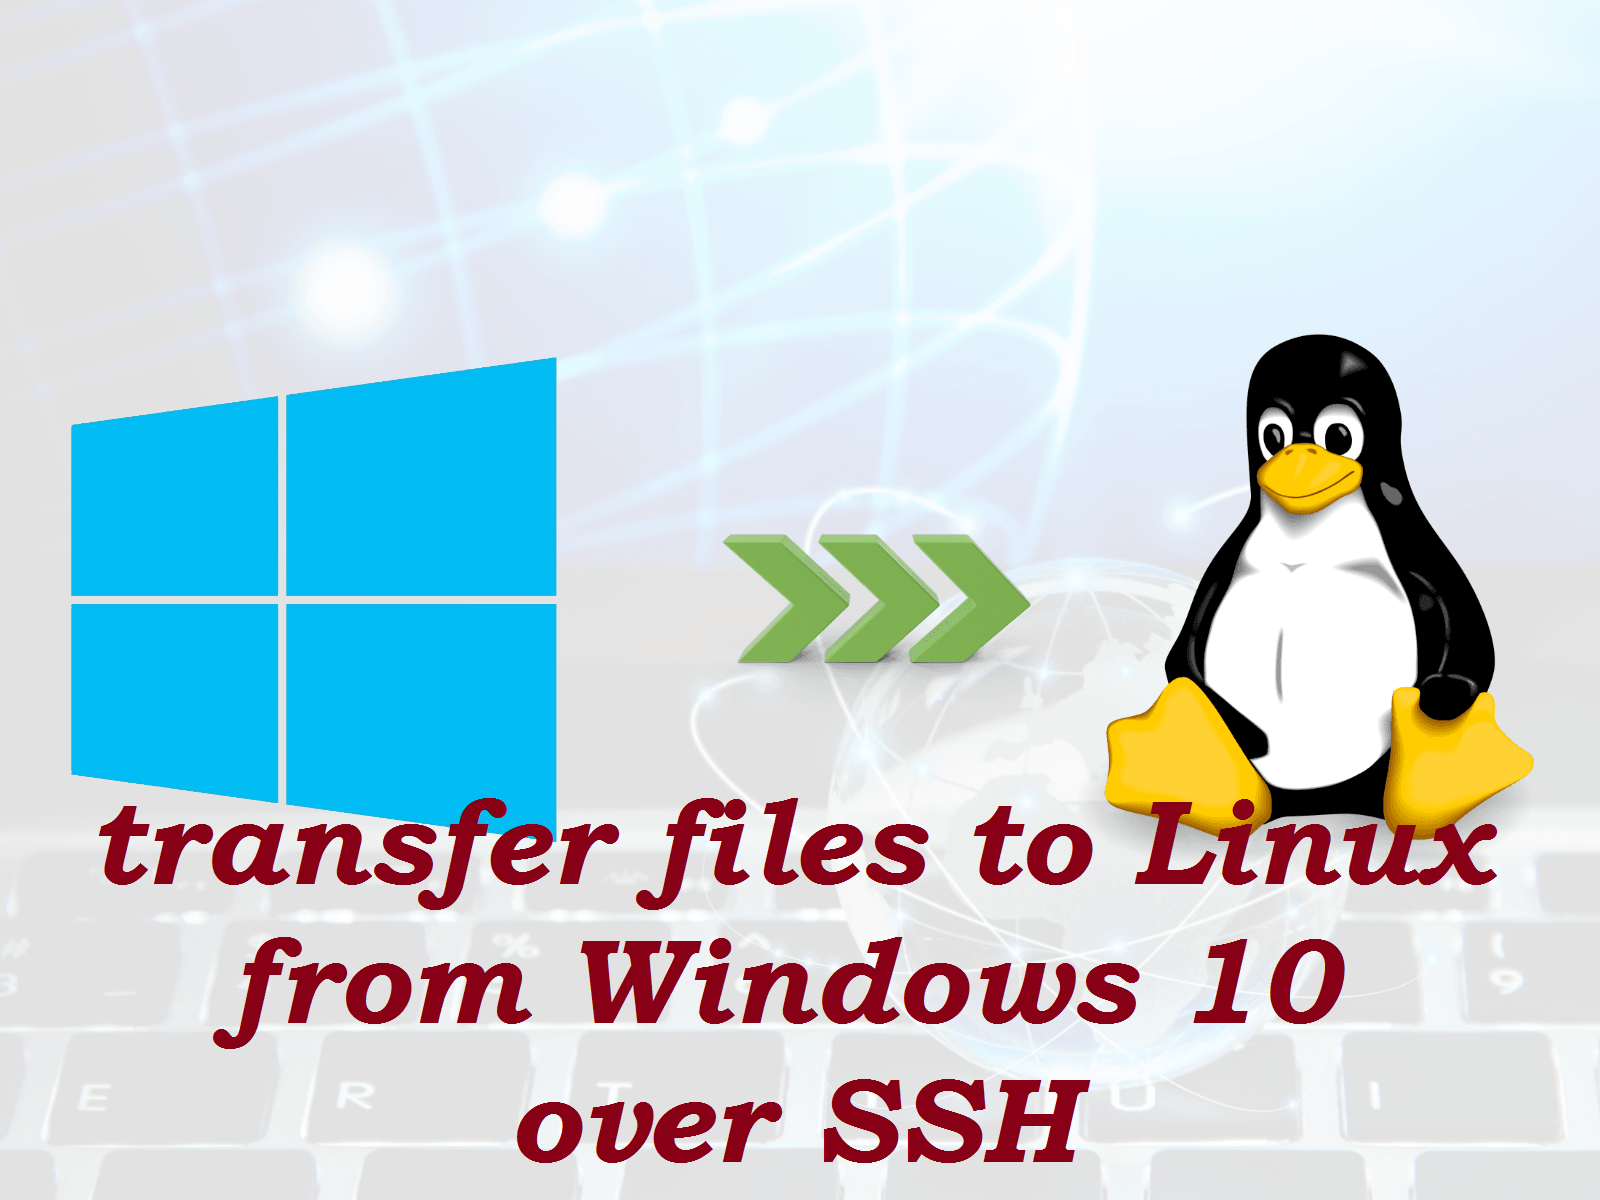 انتقال فایل از ویندوز 10 به لینوکس از طریق SSH